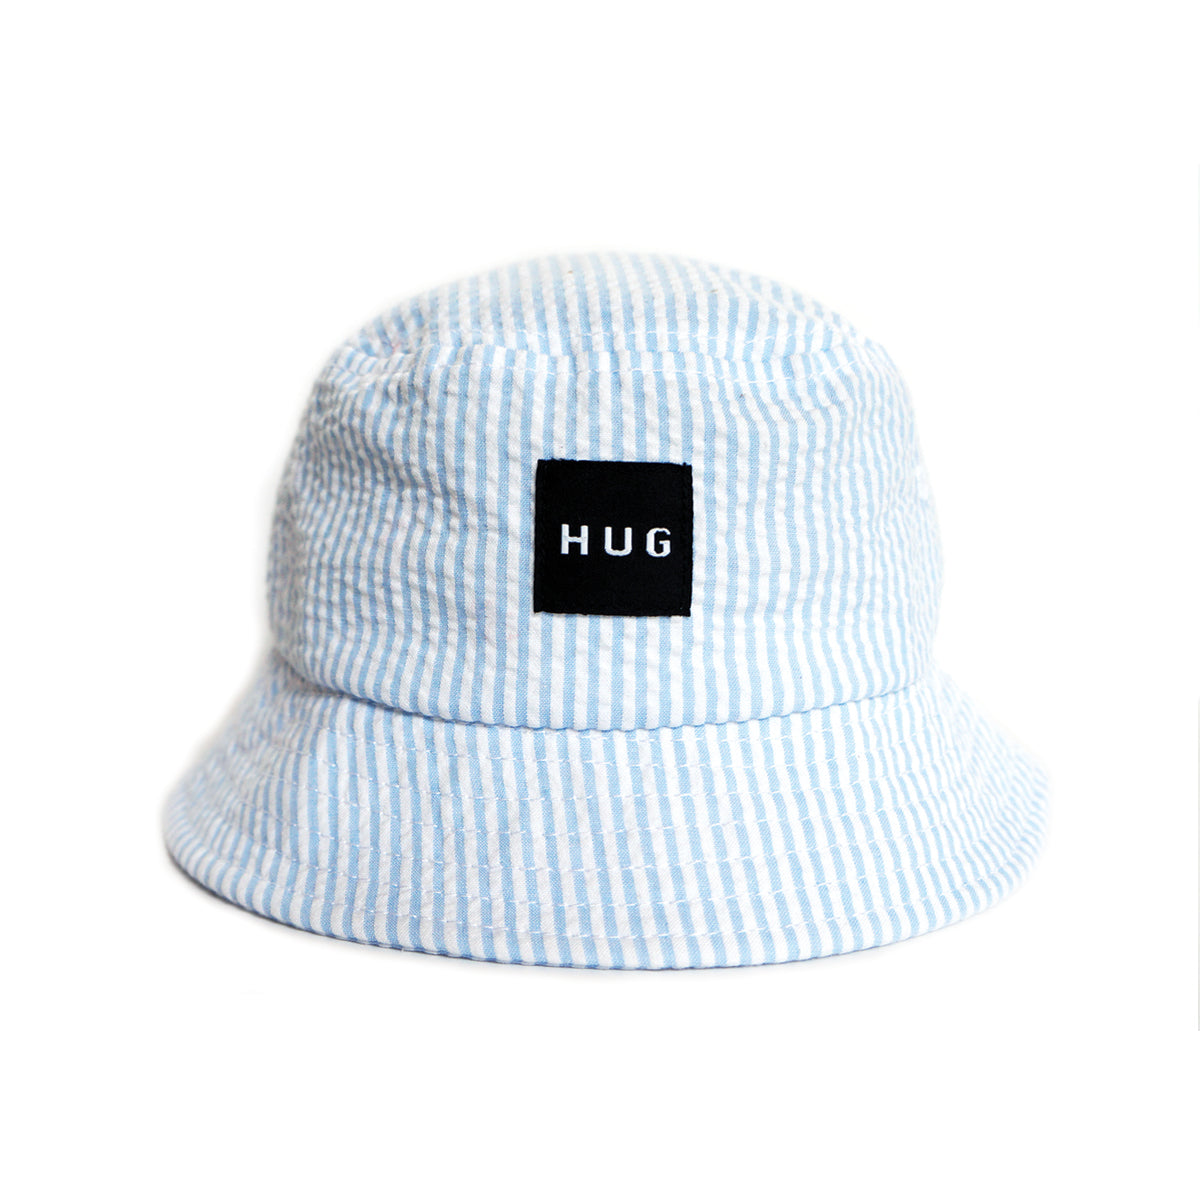 H.U.G Bucket Hat